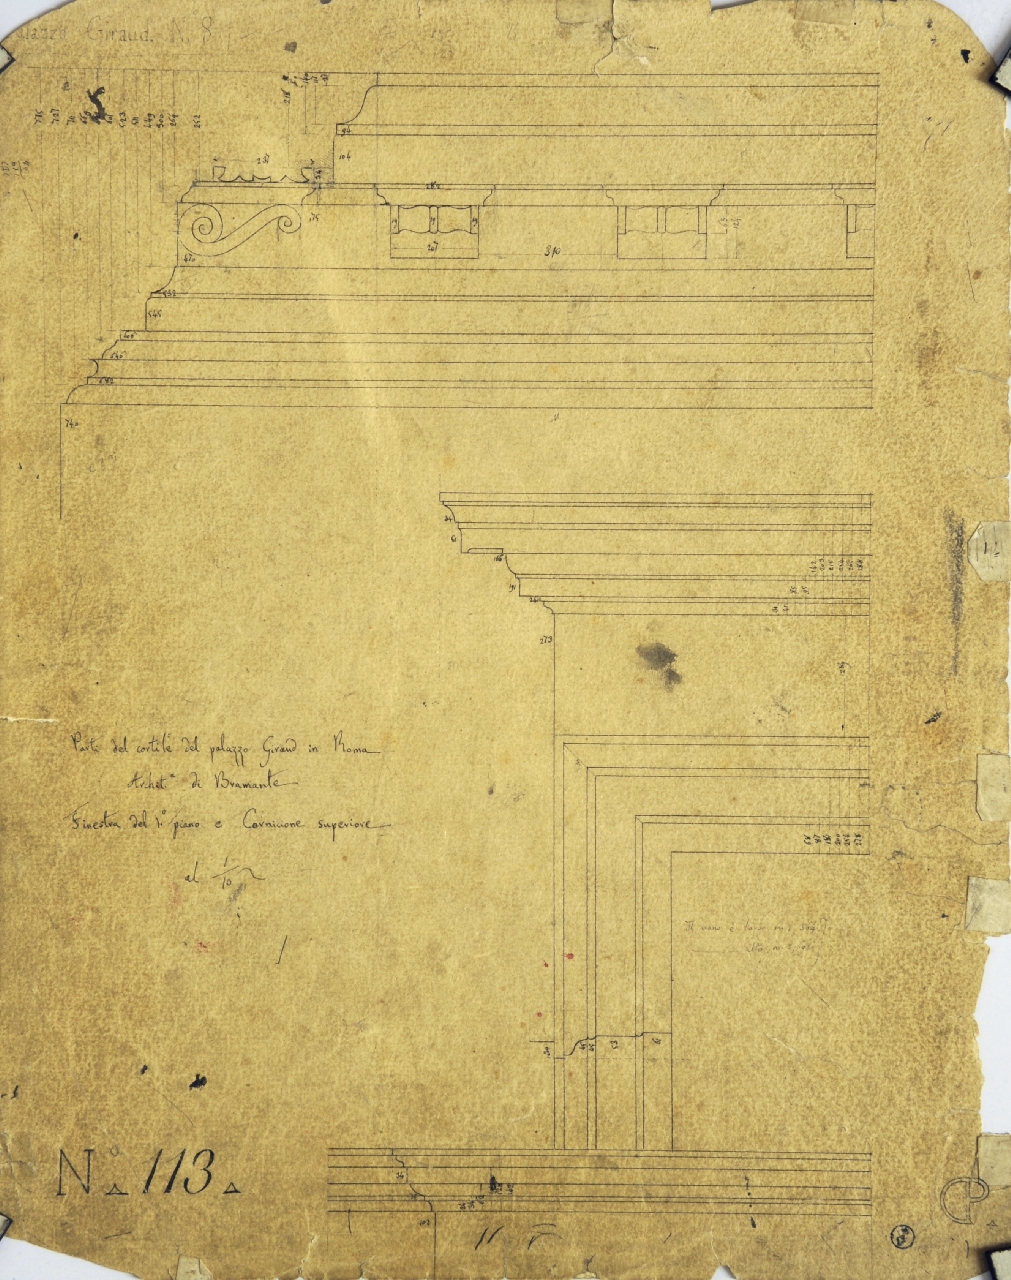 Dettagli costruttivi del cortile del palazzo Giraud (disegno architettonico) di Promis Carlo (secondo quarto sec. XIX)